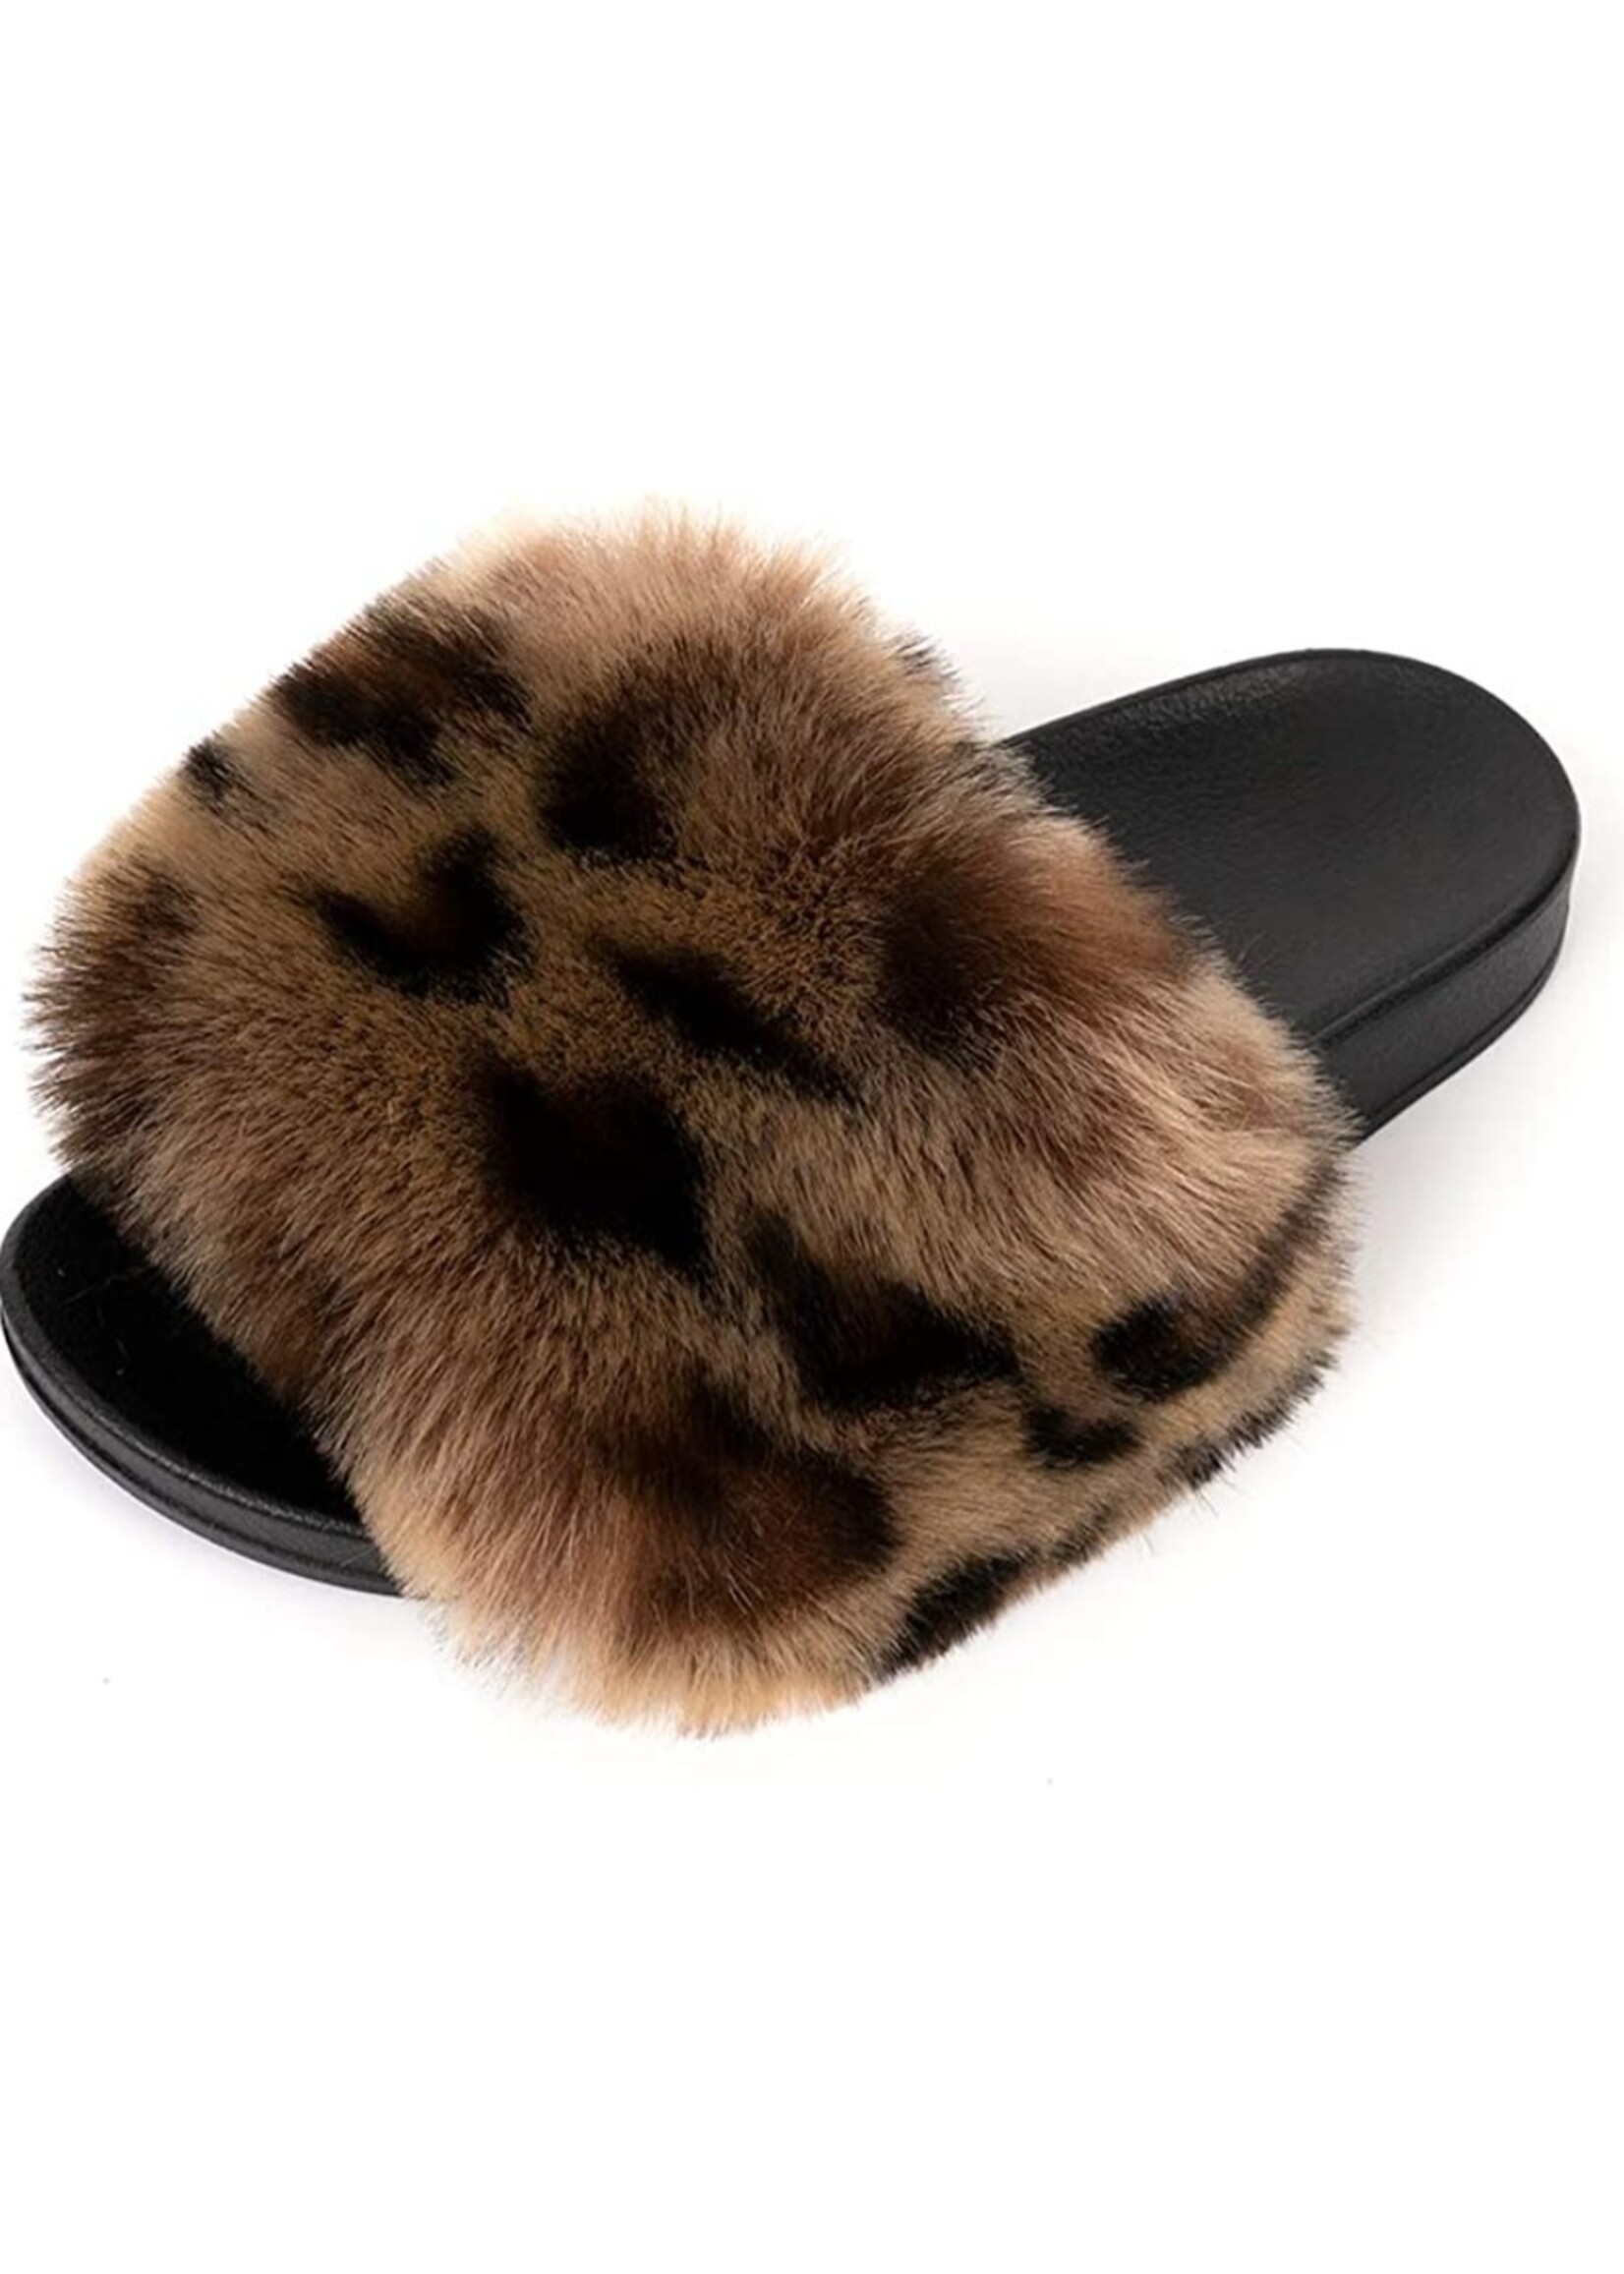 Fur Slippers Slides Leopard